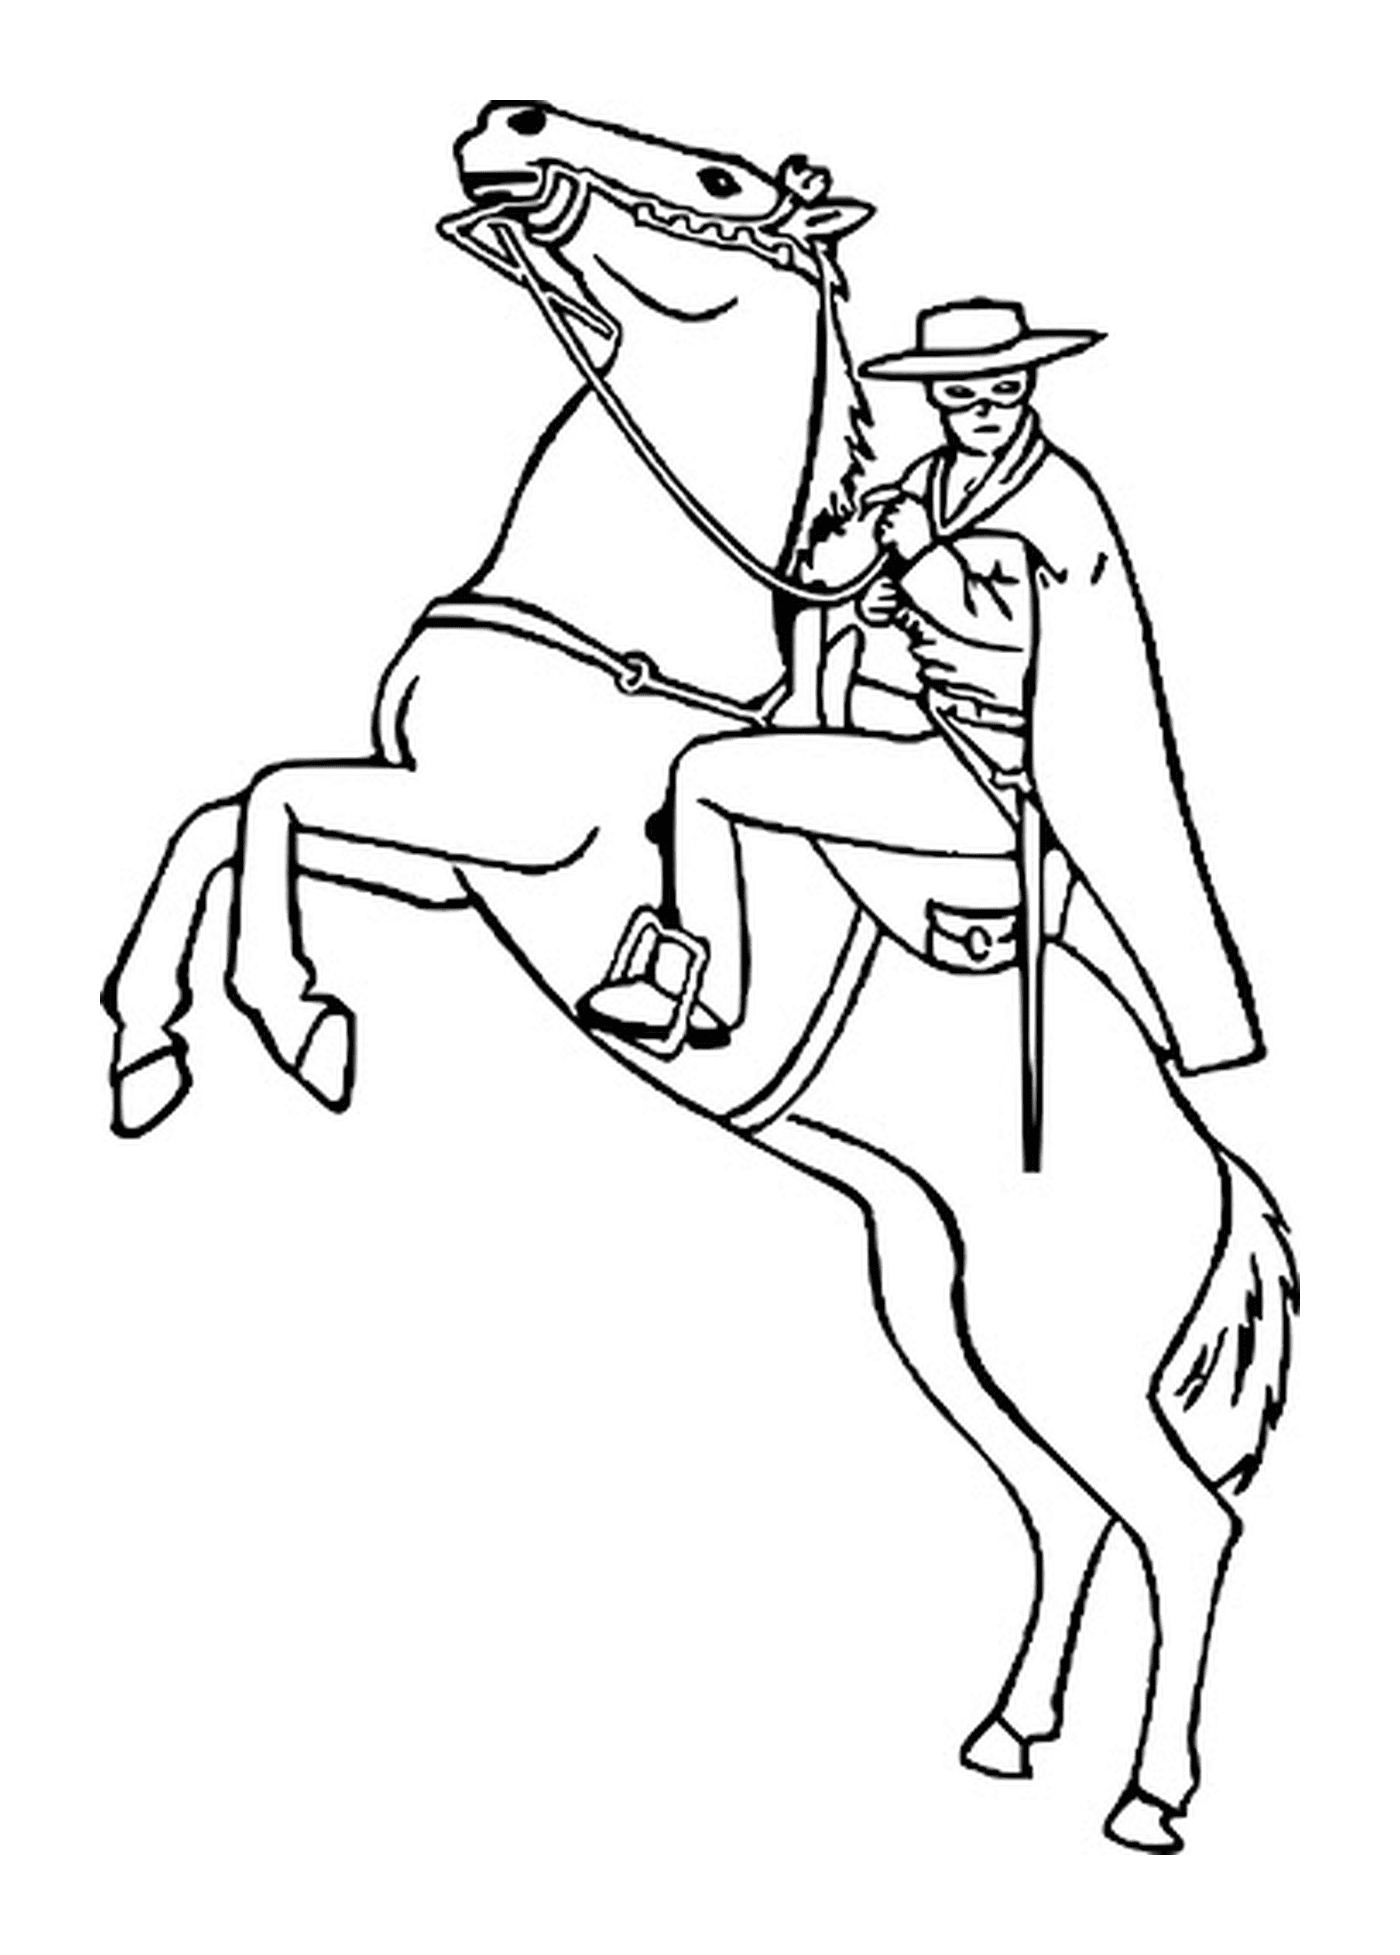  Zorro on his horse 